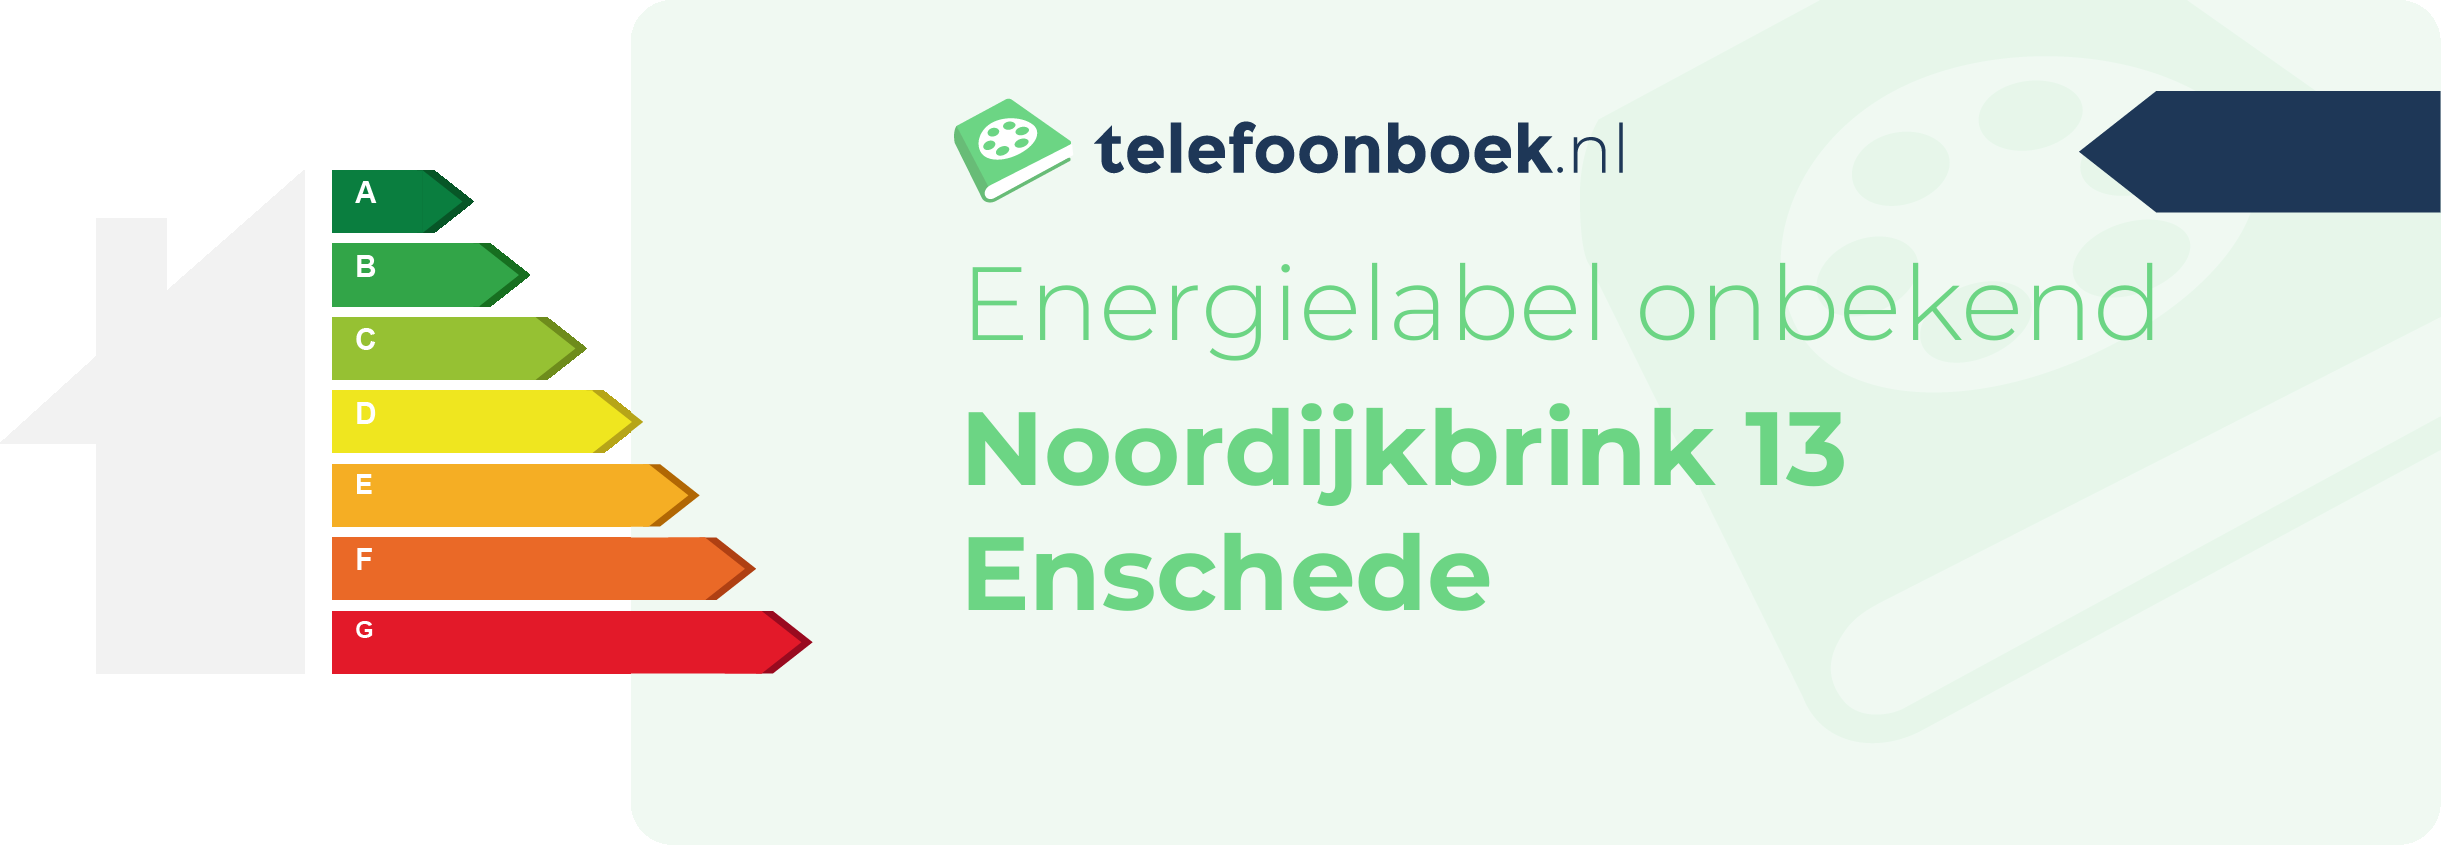 Energielabel Noordijkbrink 13 Enschede